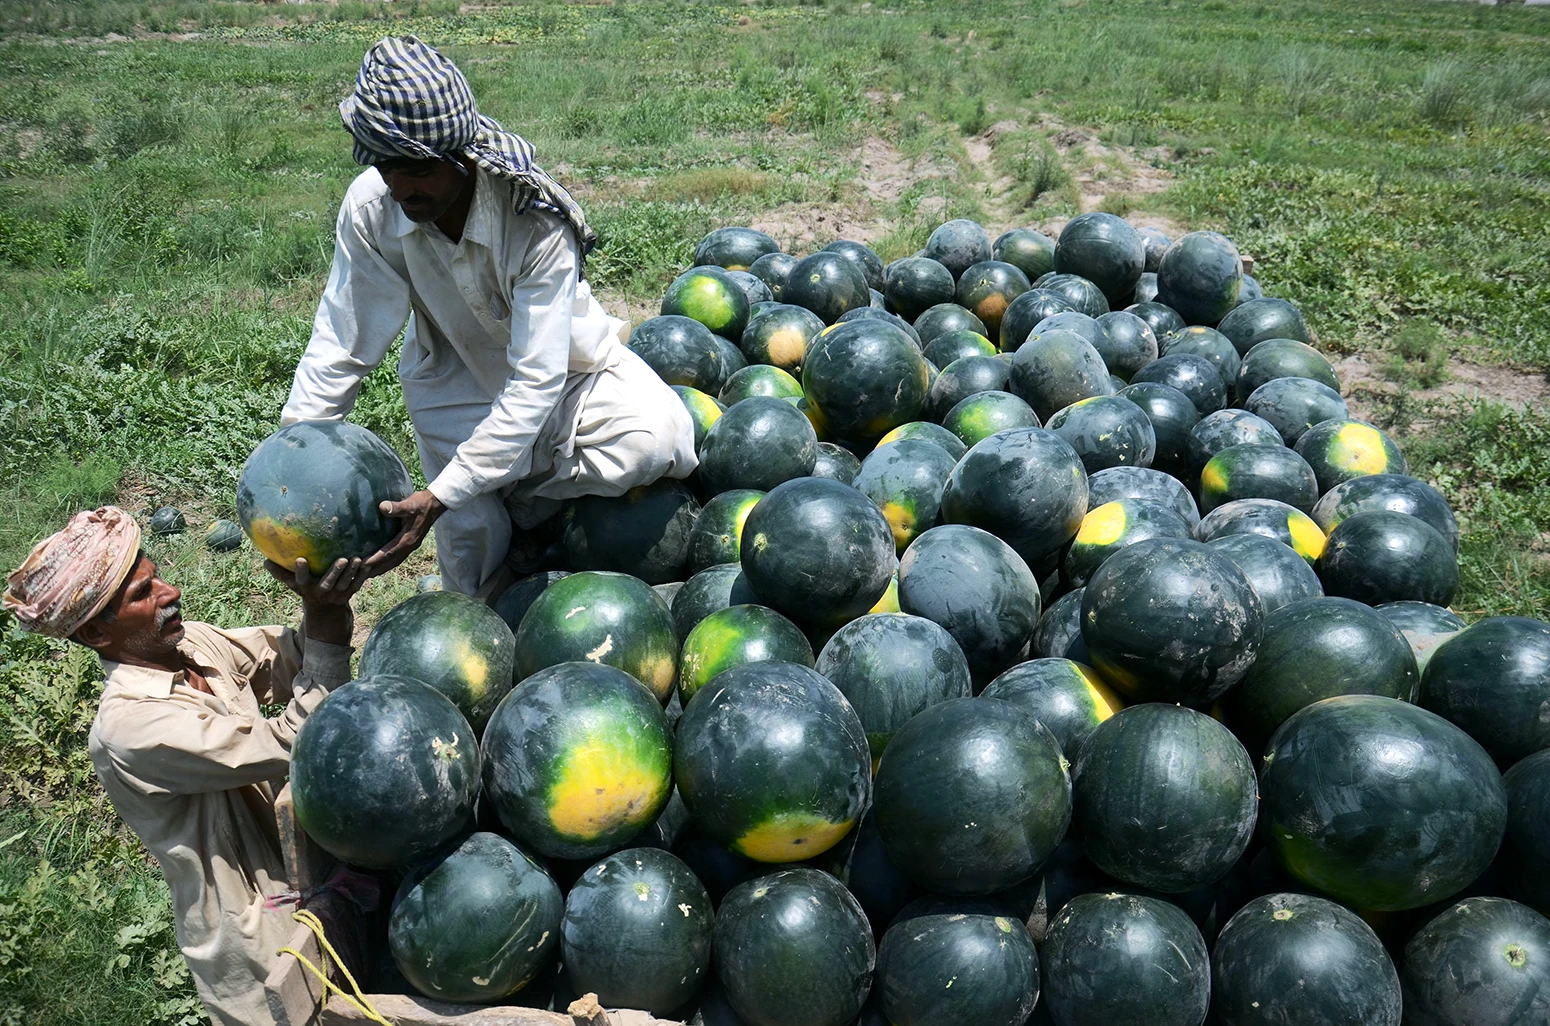 کشاورزان پاکستانی مشغول بارگیری هندوانه هستند.